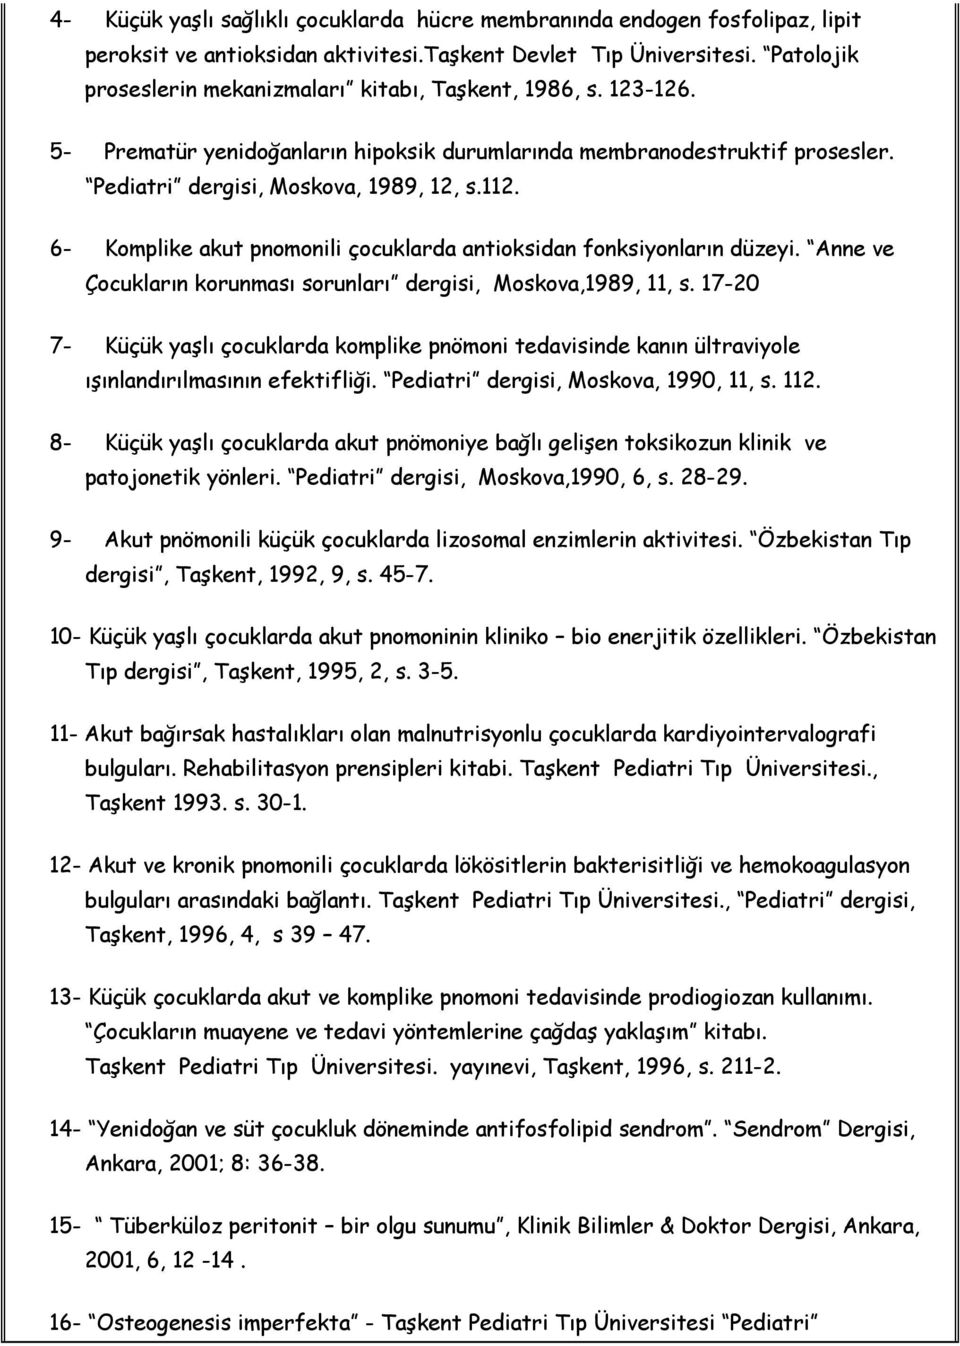 6- Komplike akut pnomonili çocuklarda antioksidan fonksiyonların düzeyi. Anne ve Çocukların korunması sorunları dergisi, Moskova,1989, 11, s.